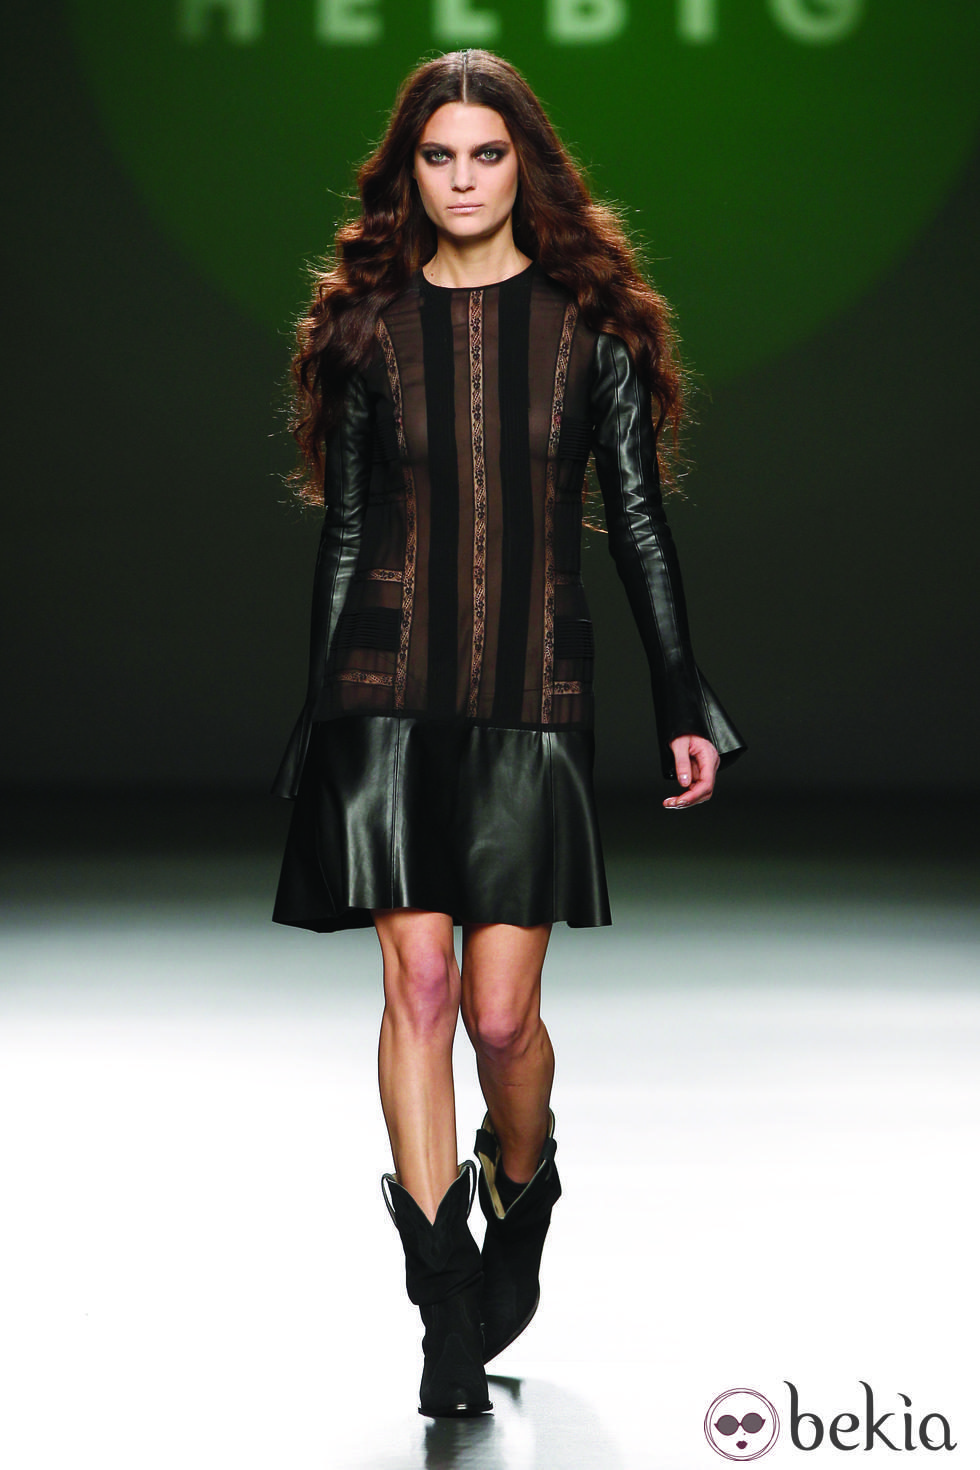 Vestido de cuero y gasa negra de la colección otoño/invierno 2012/2013 de Teresa Helbig